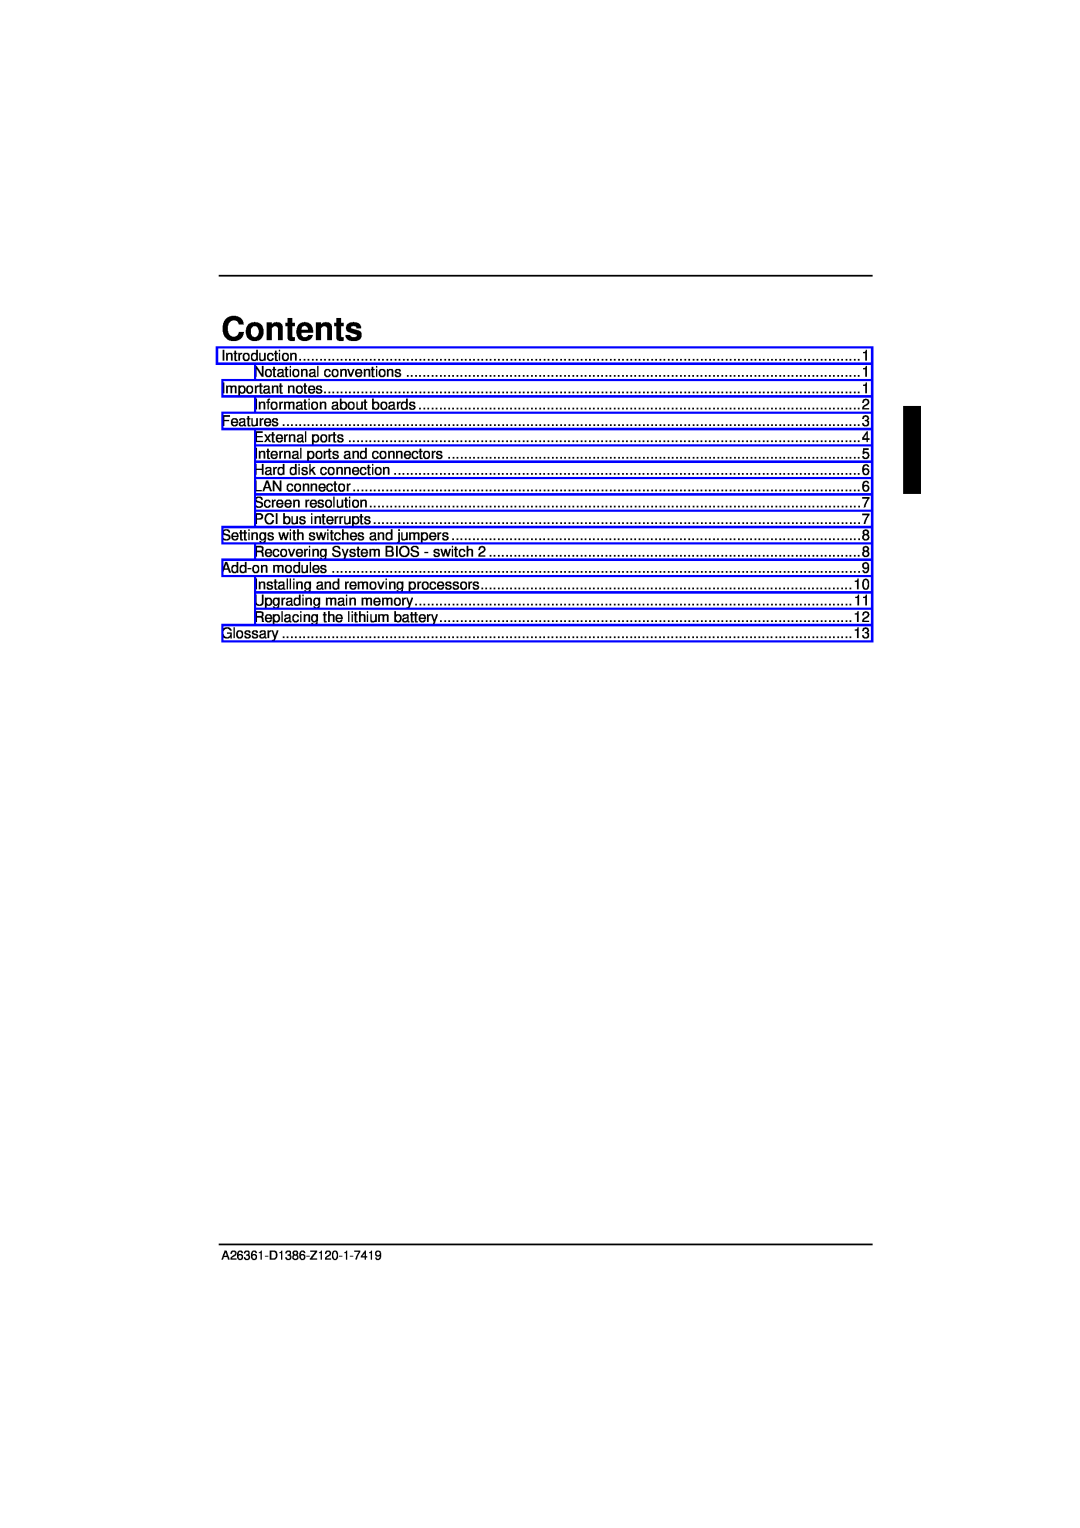 Fujitsu D1386 technical manual Contents 